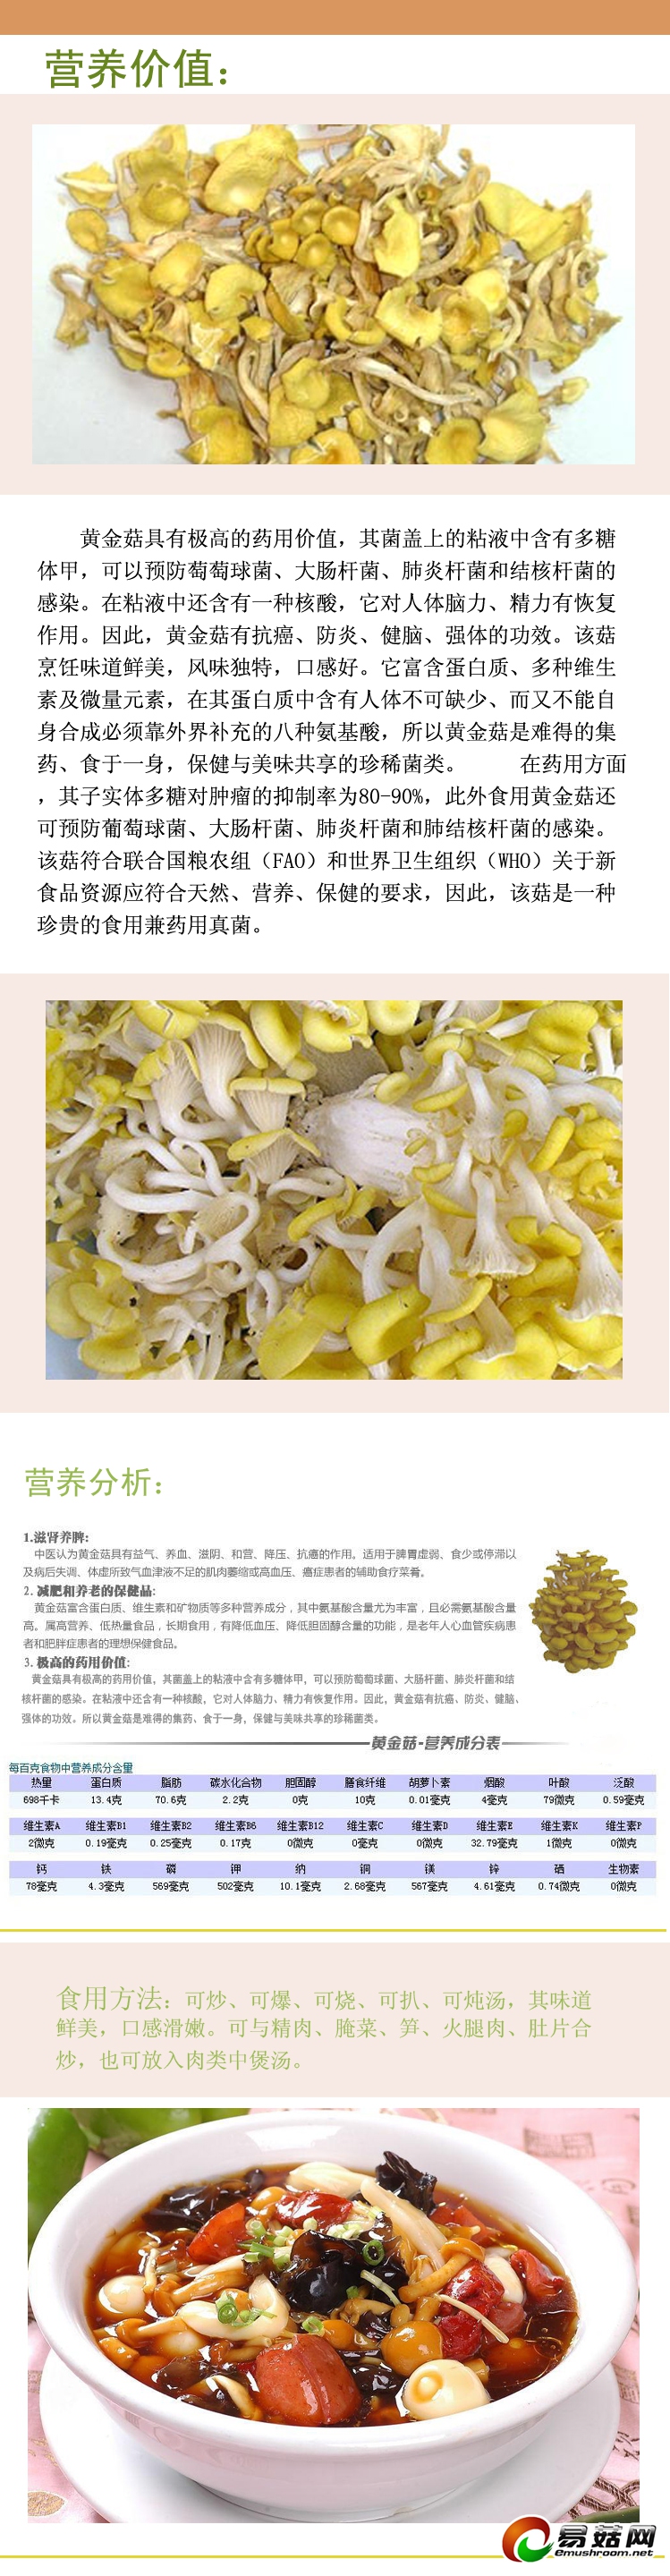 食用菌系列—黄金菇-2